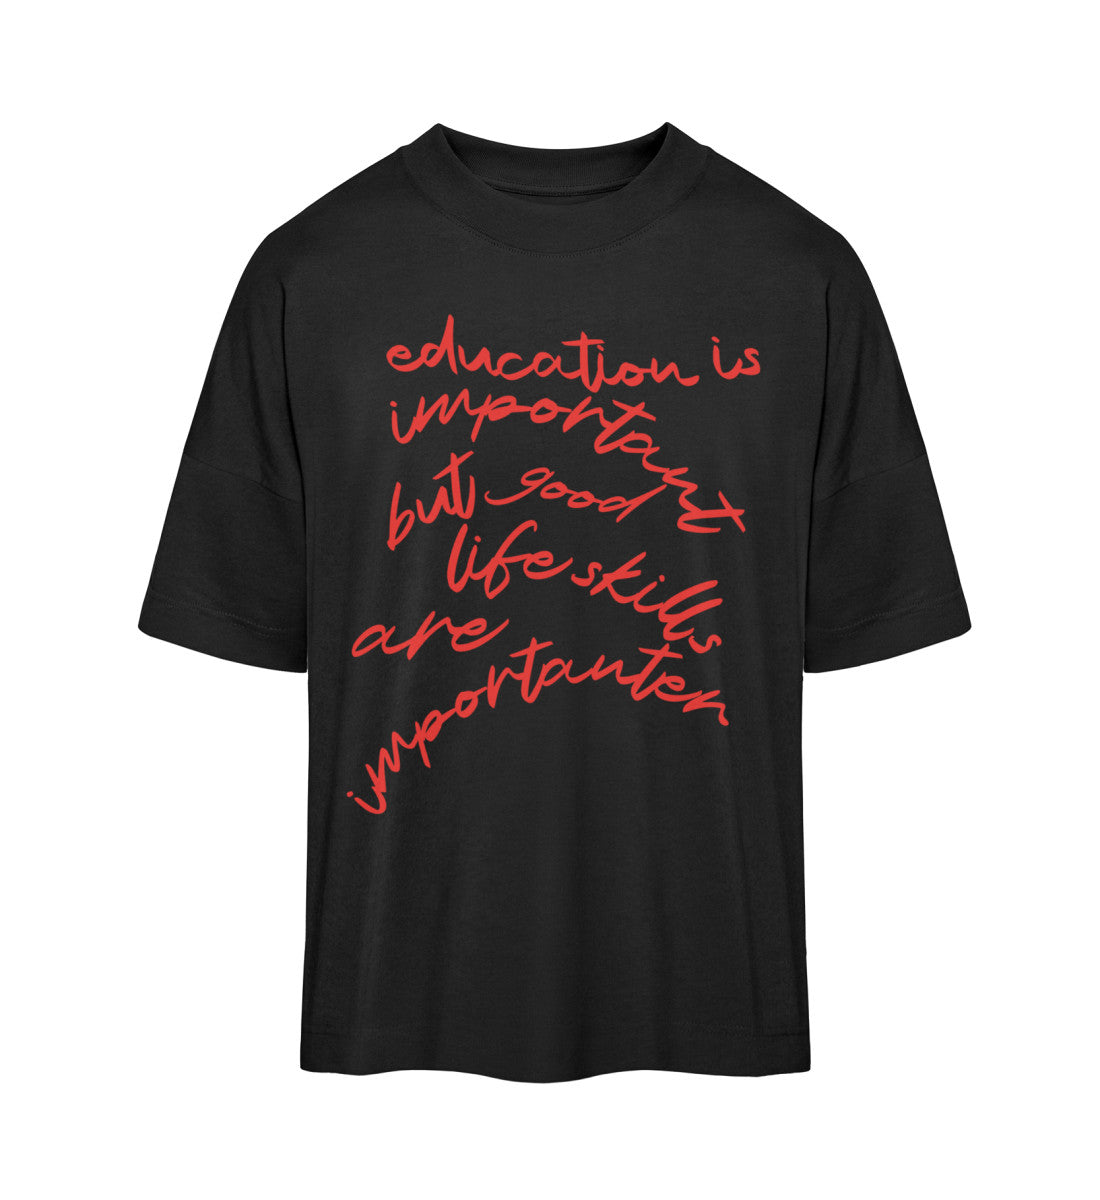 Schwarzes T-Shirt im Unisex Oversize Fit für Frauen und Männer bedruckt mit dem Design der Roger Rockawoo Kollektion education versus life skills